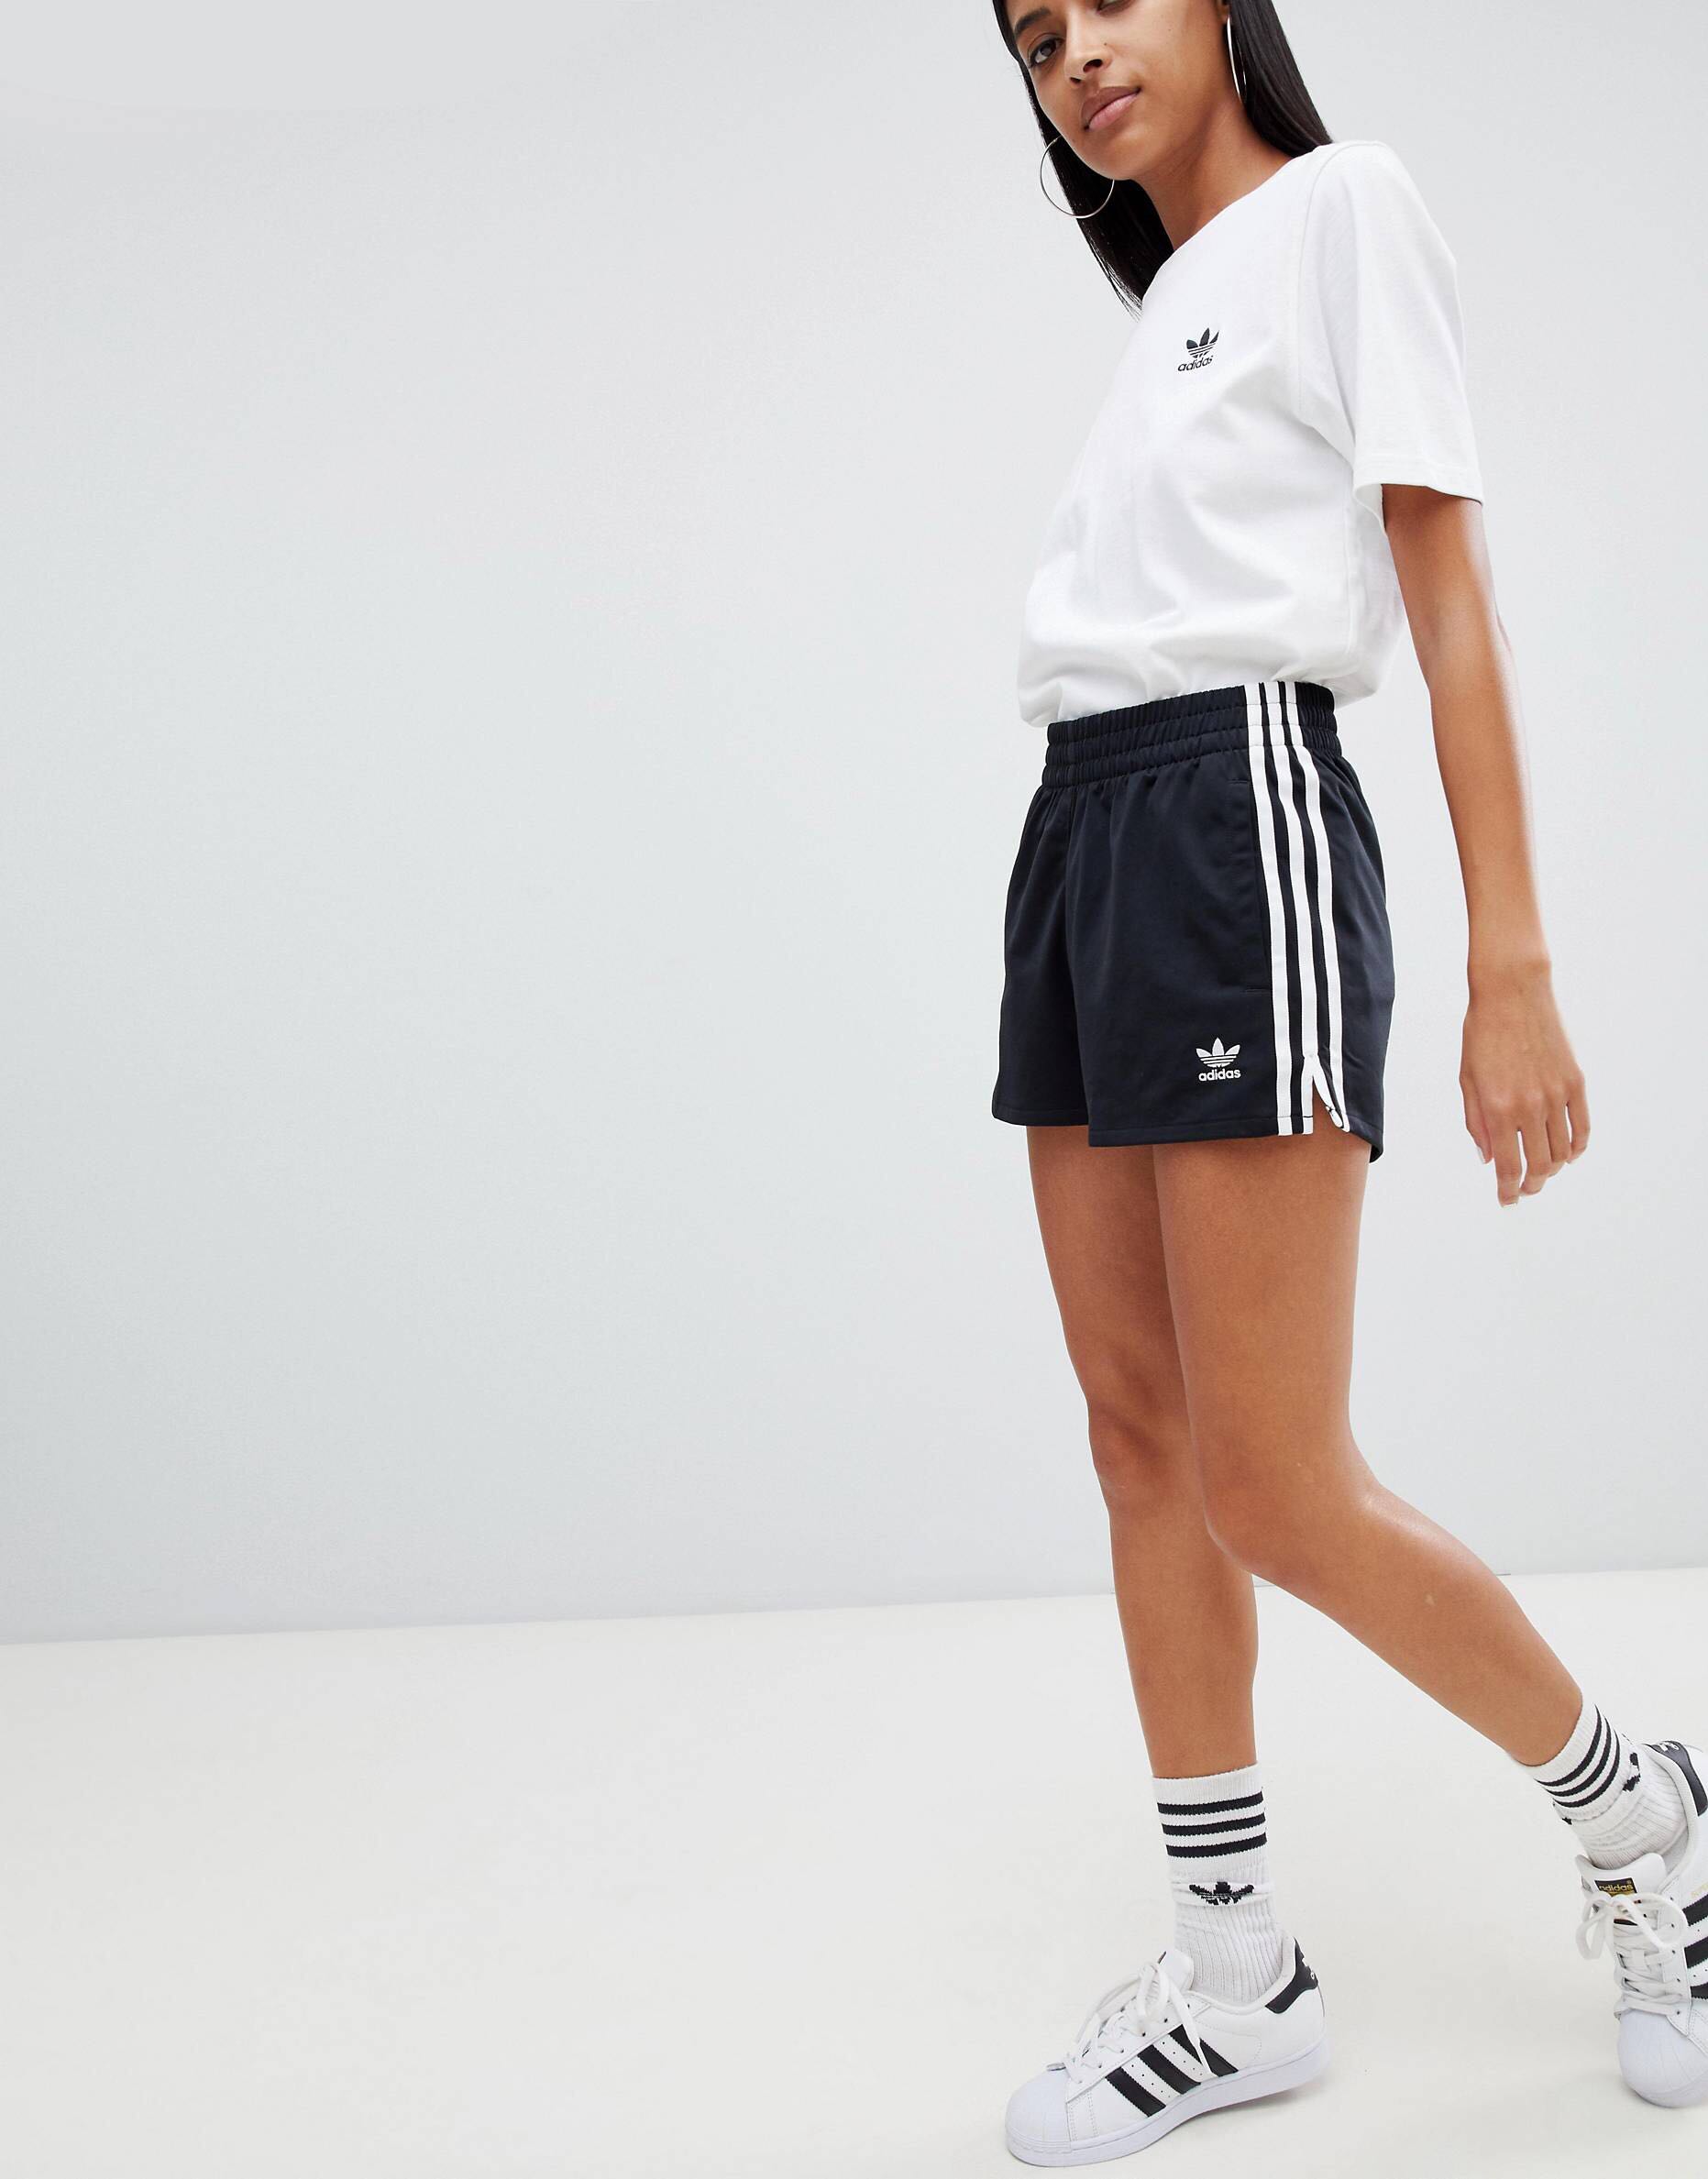 adidas female shorts